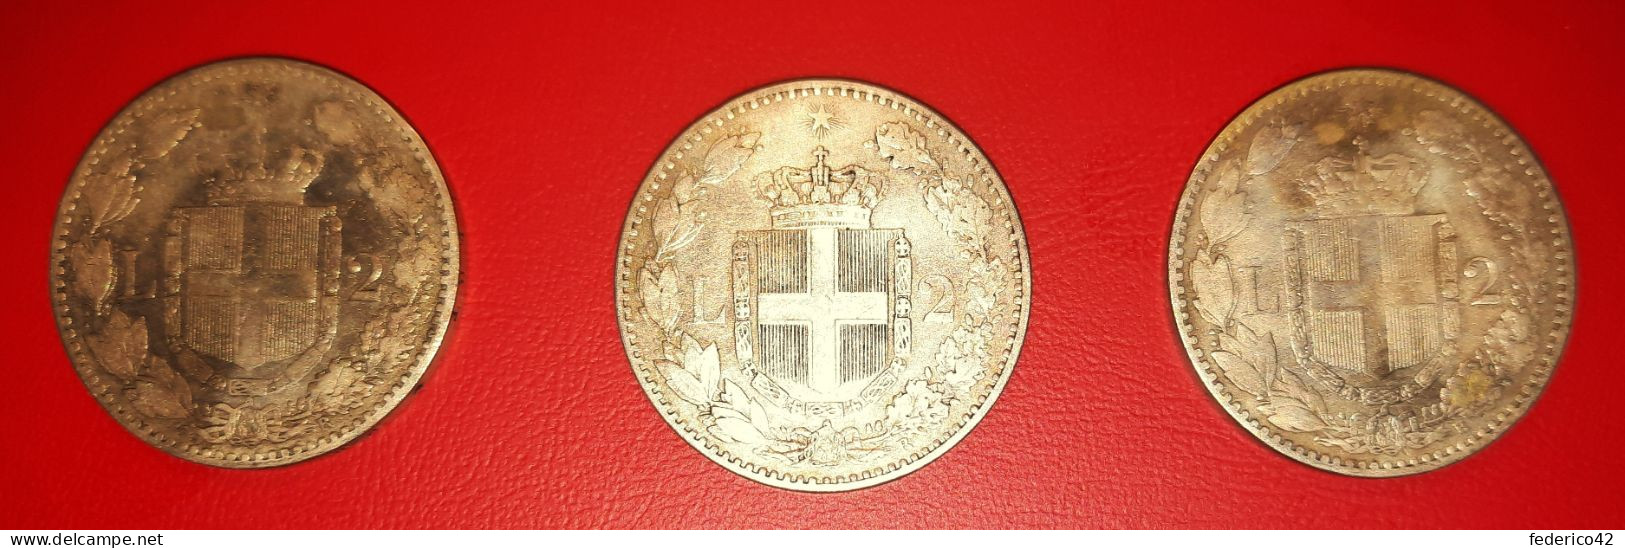 REGNO D' ITALIA 3 MONETE ARGENTO DA 2 LIRE 1° TIPO 1884 CONDIZIONI BB/SPL - 1878-1900 : Umberto I